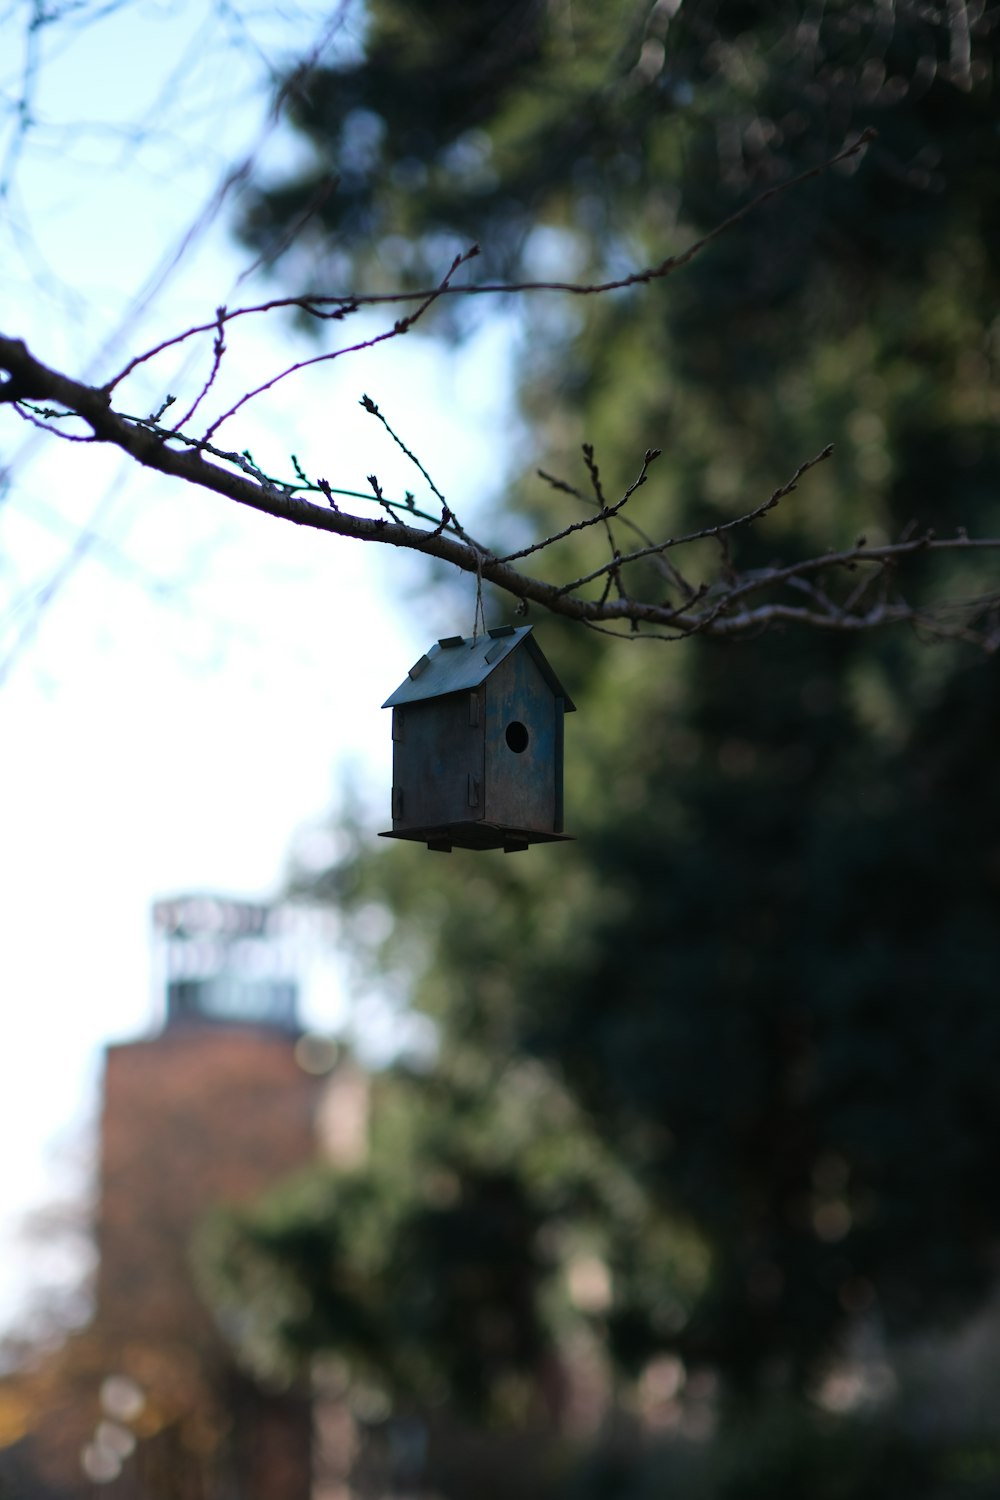 a birdhouse on a tree